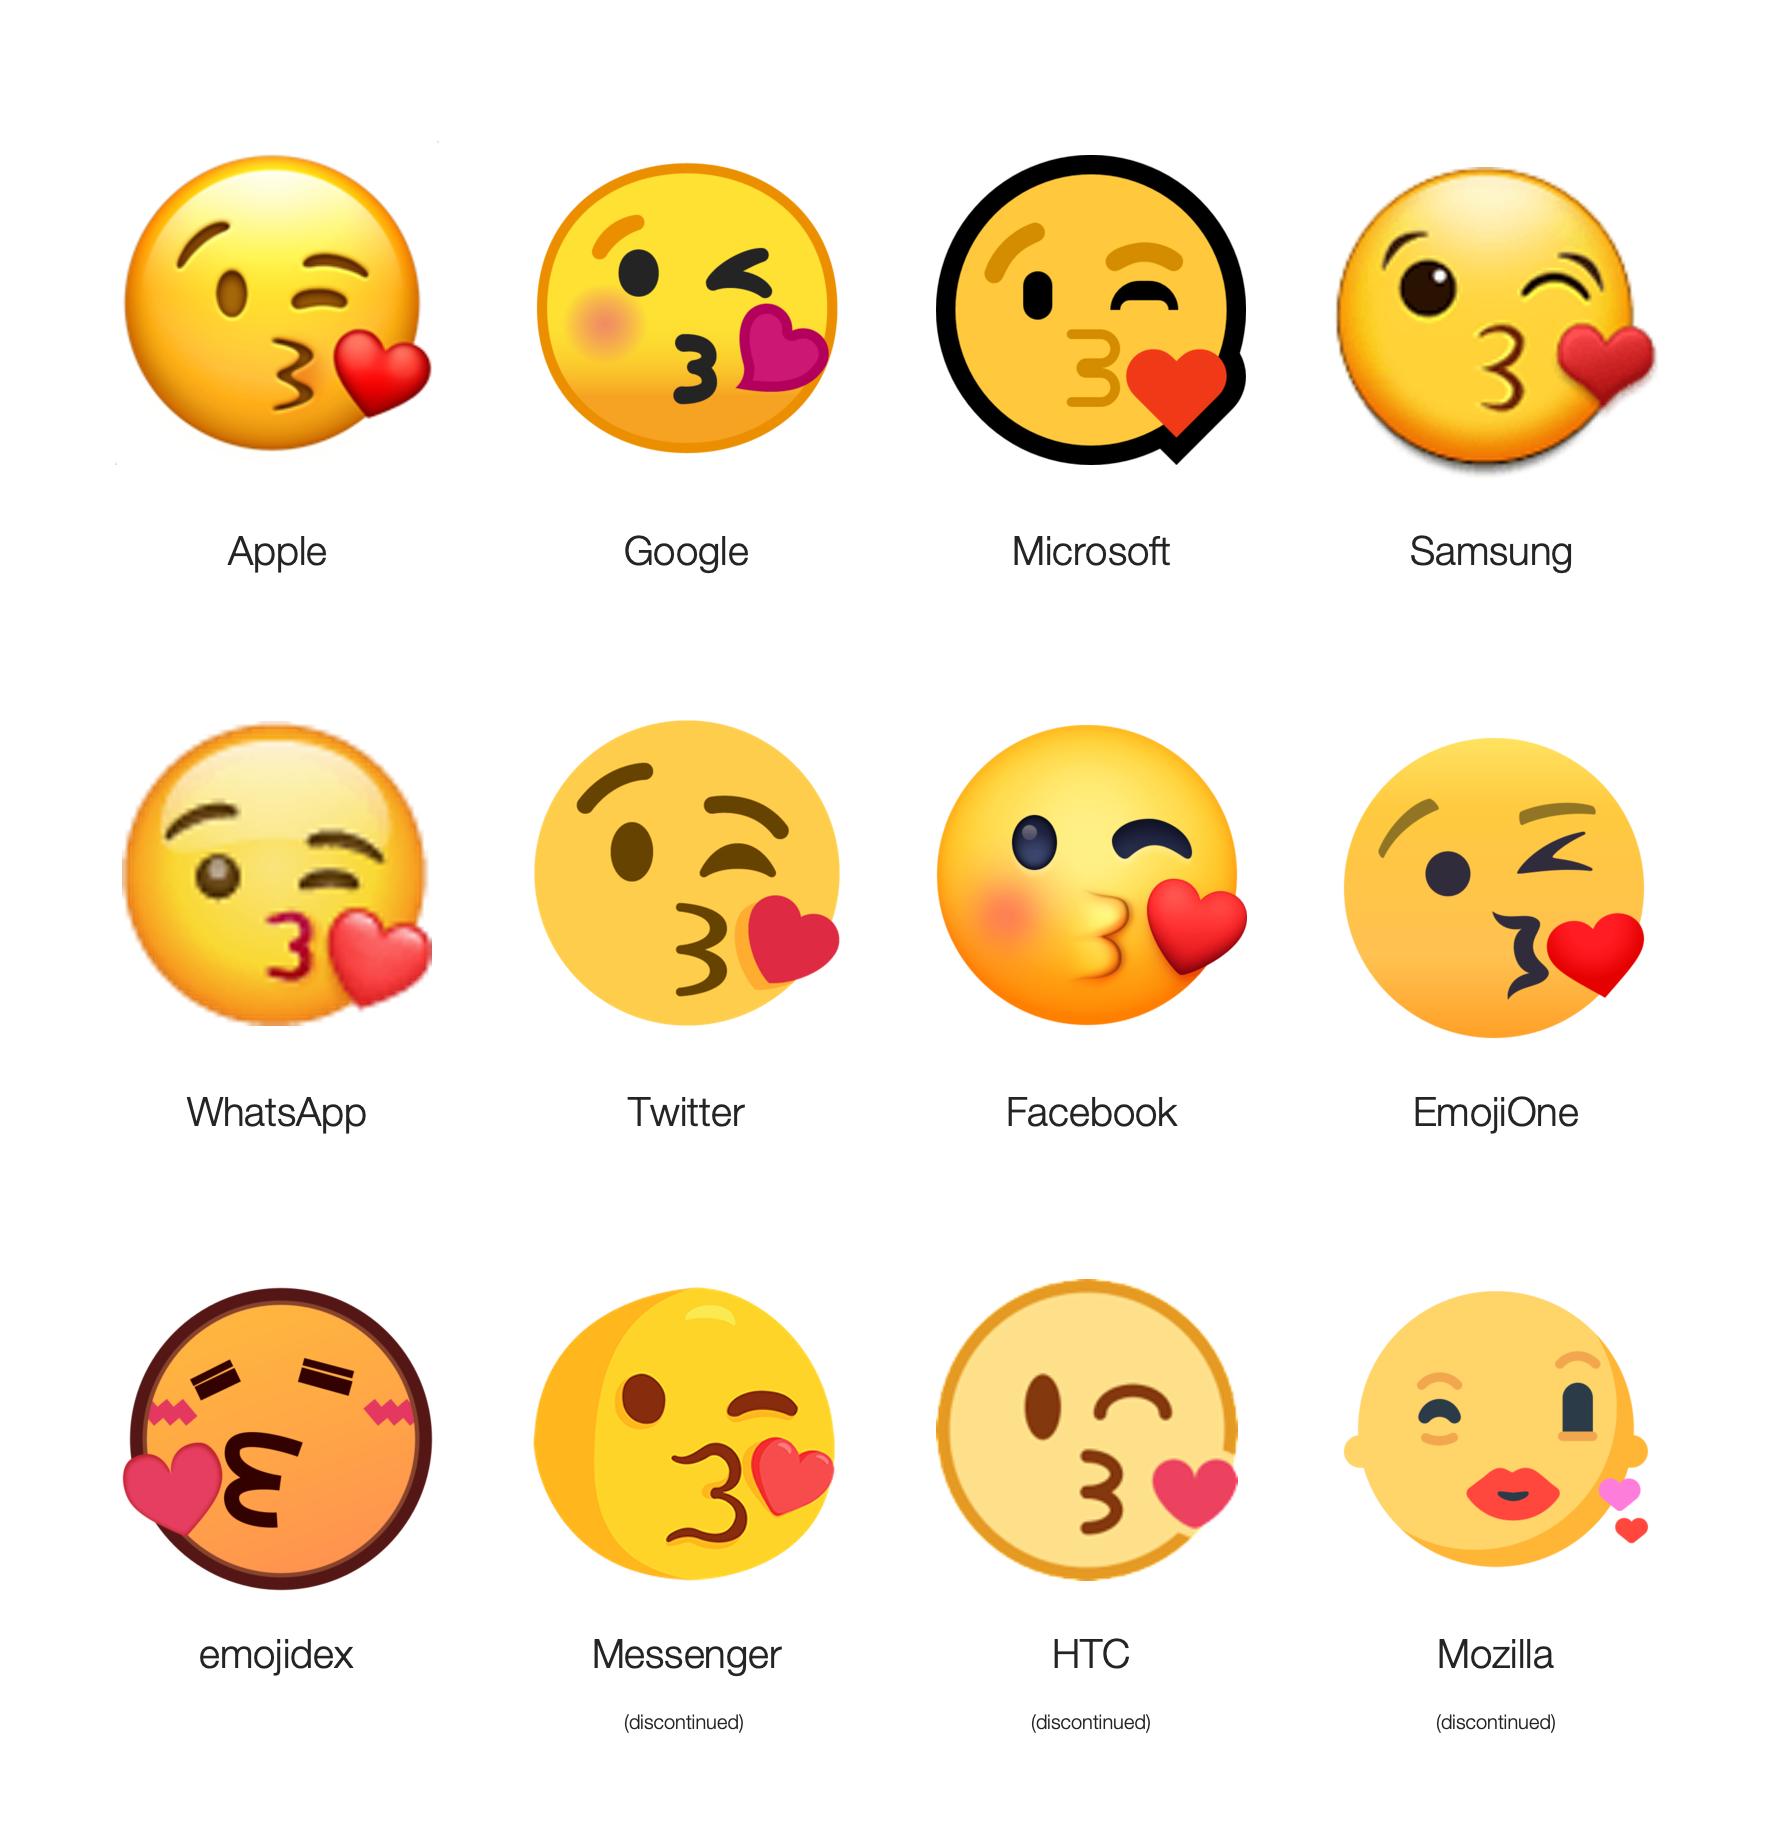 Mozilla Emojis